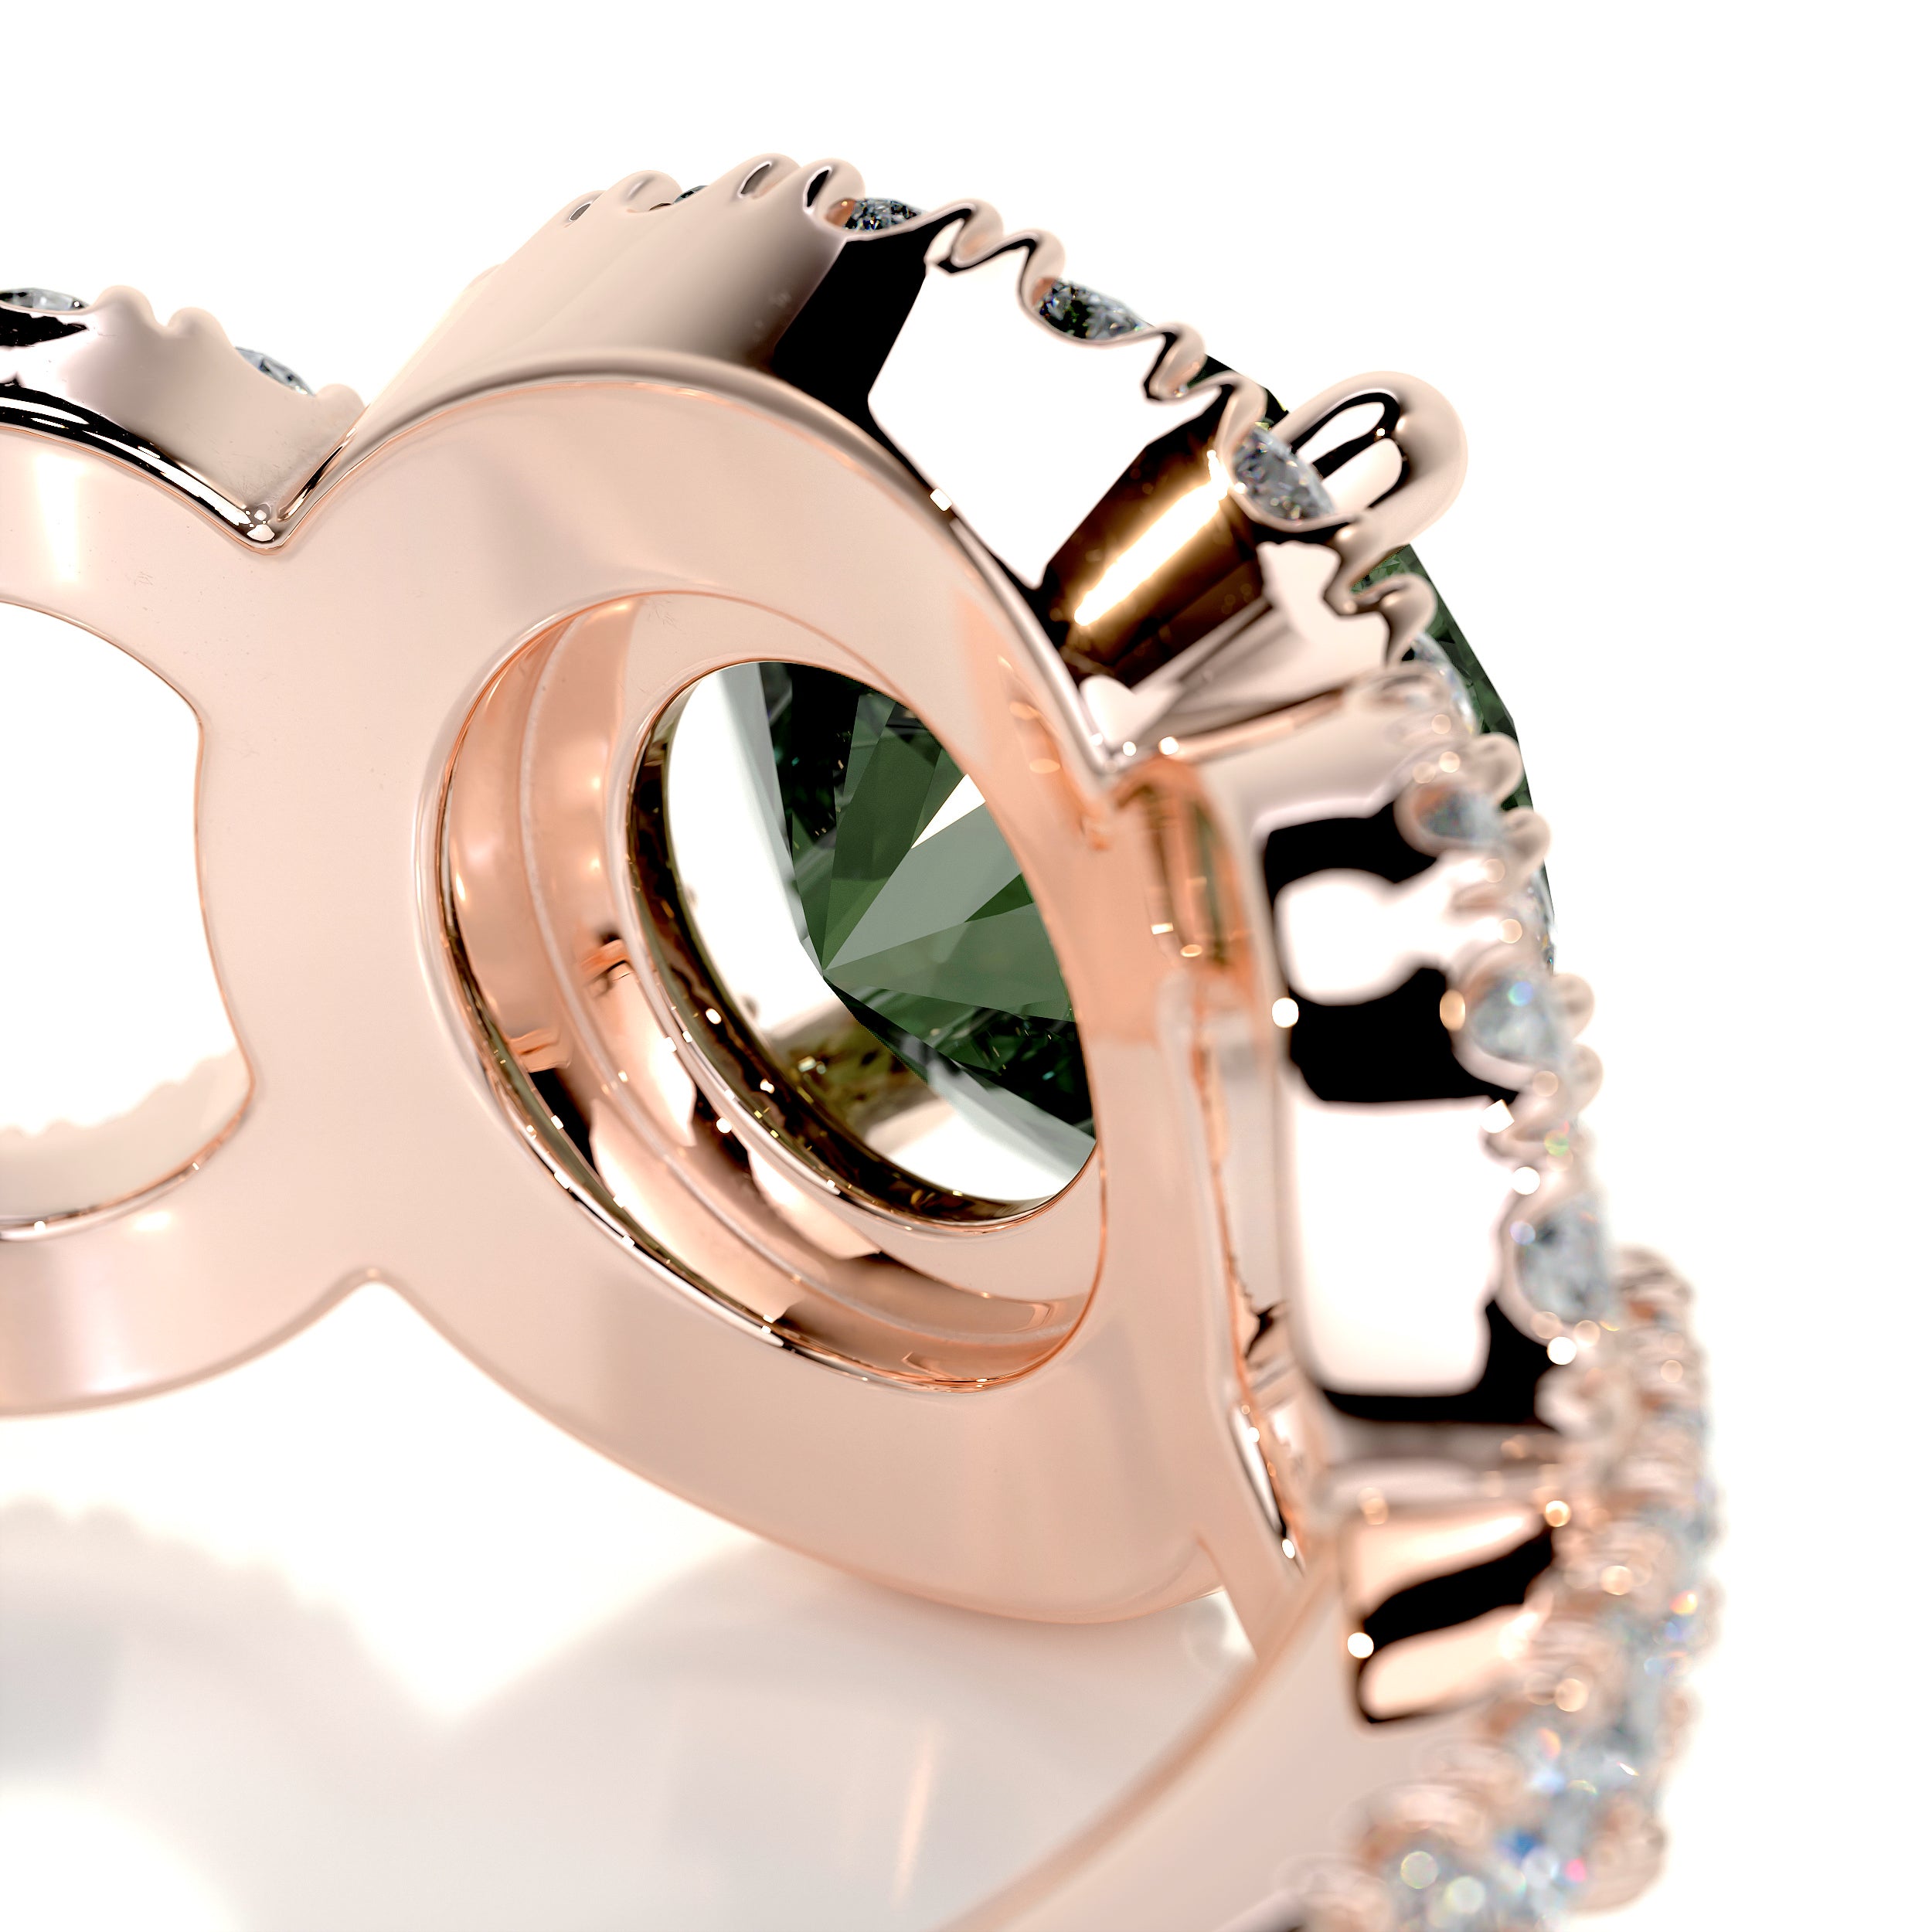 Elize Gemstone & Diamonds Ring   (1.25 Carat) -14K Rose Gold